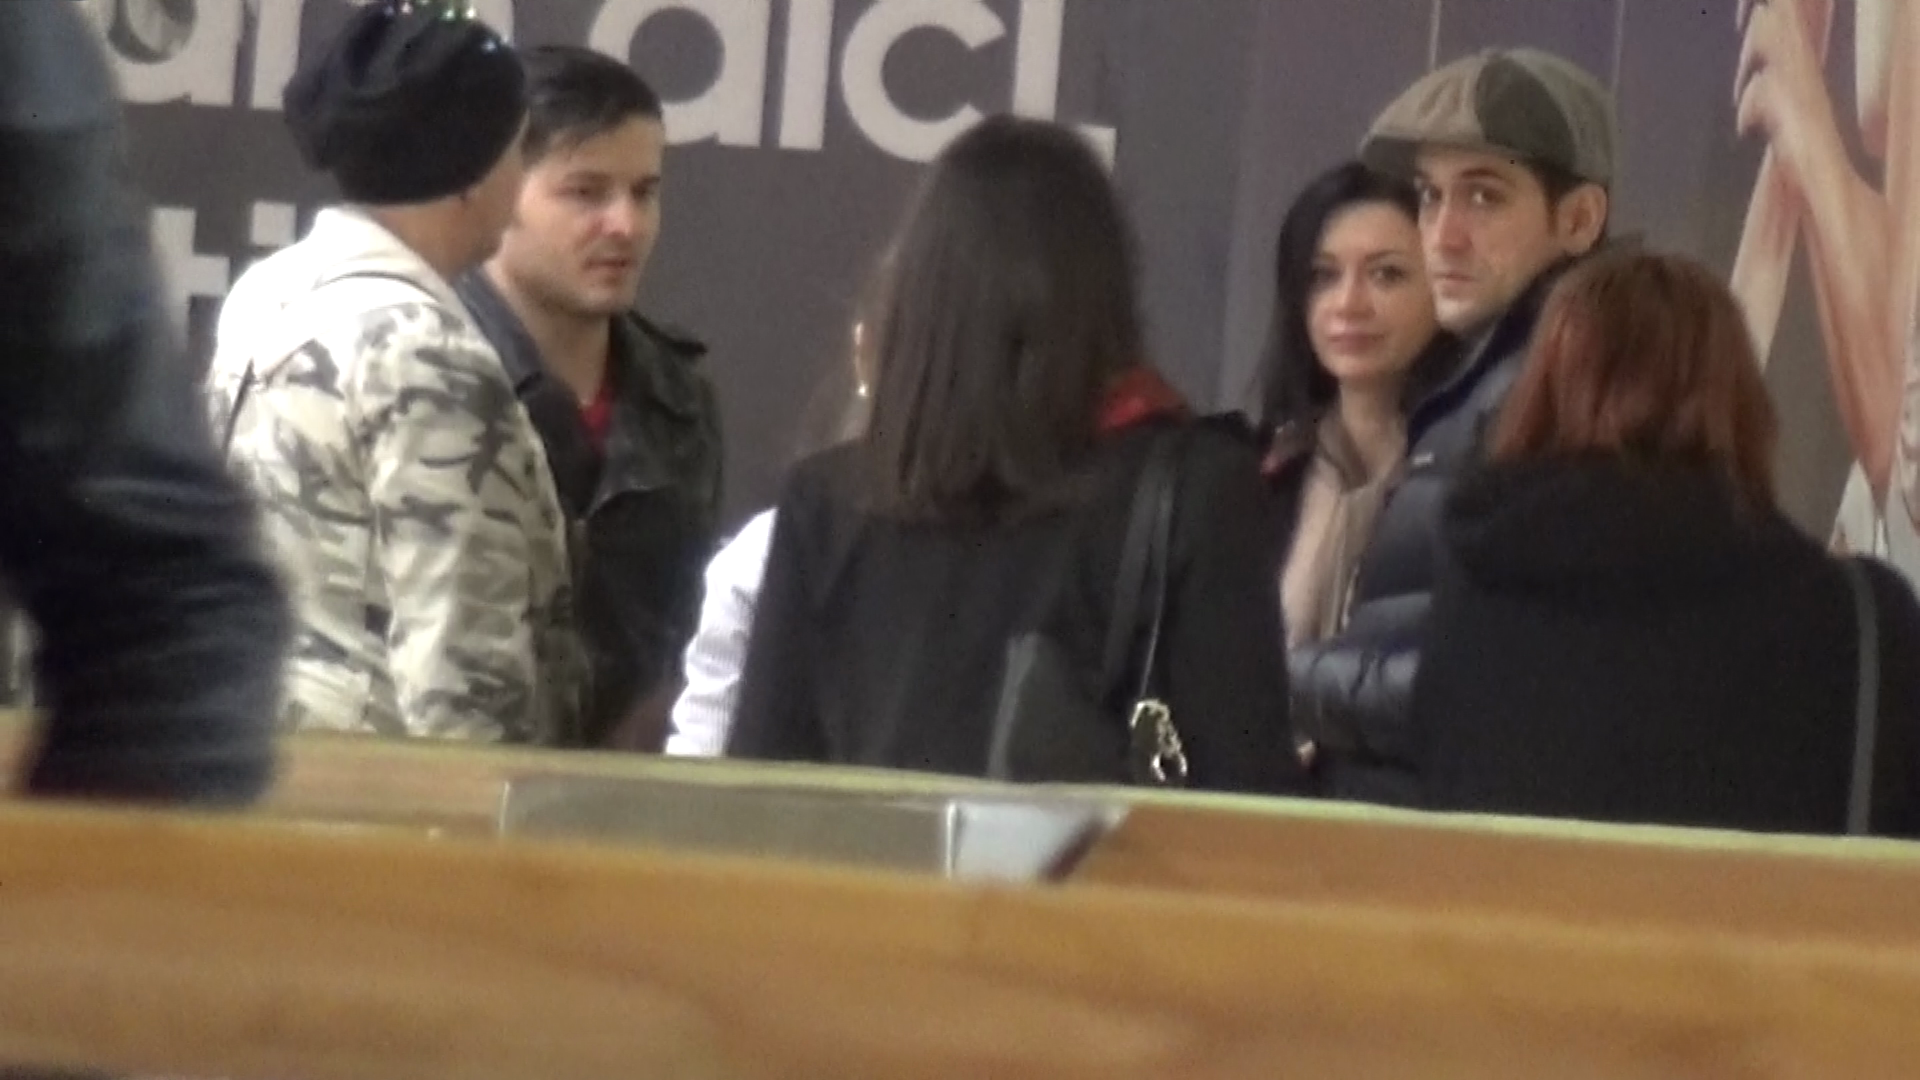 Ouatu s-a intalnit intr-un centru comercial din Capitala cu Liviu Varciu si surorile Denisa si Raluca Tanase